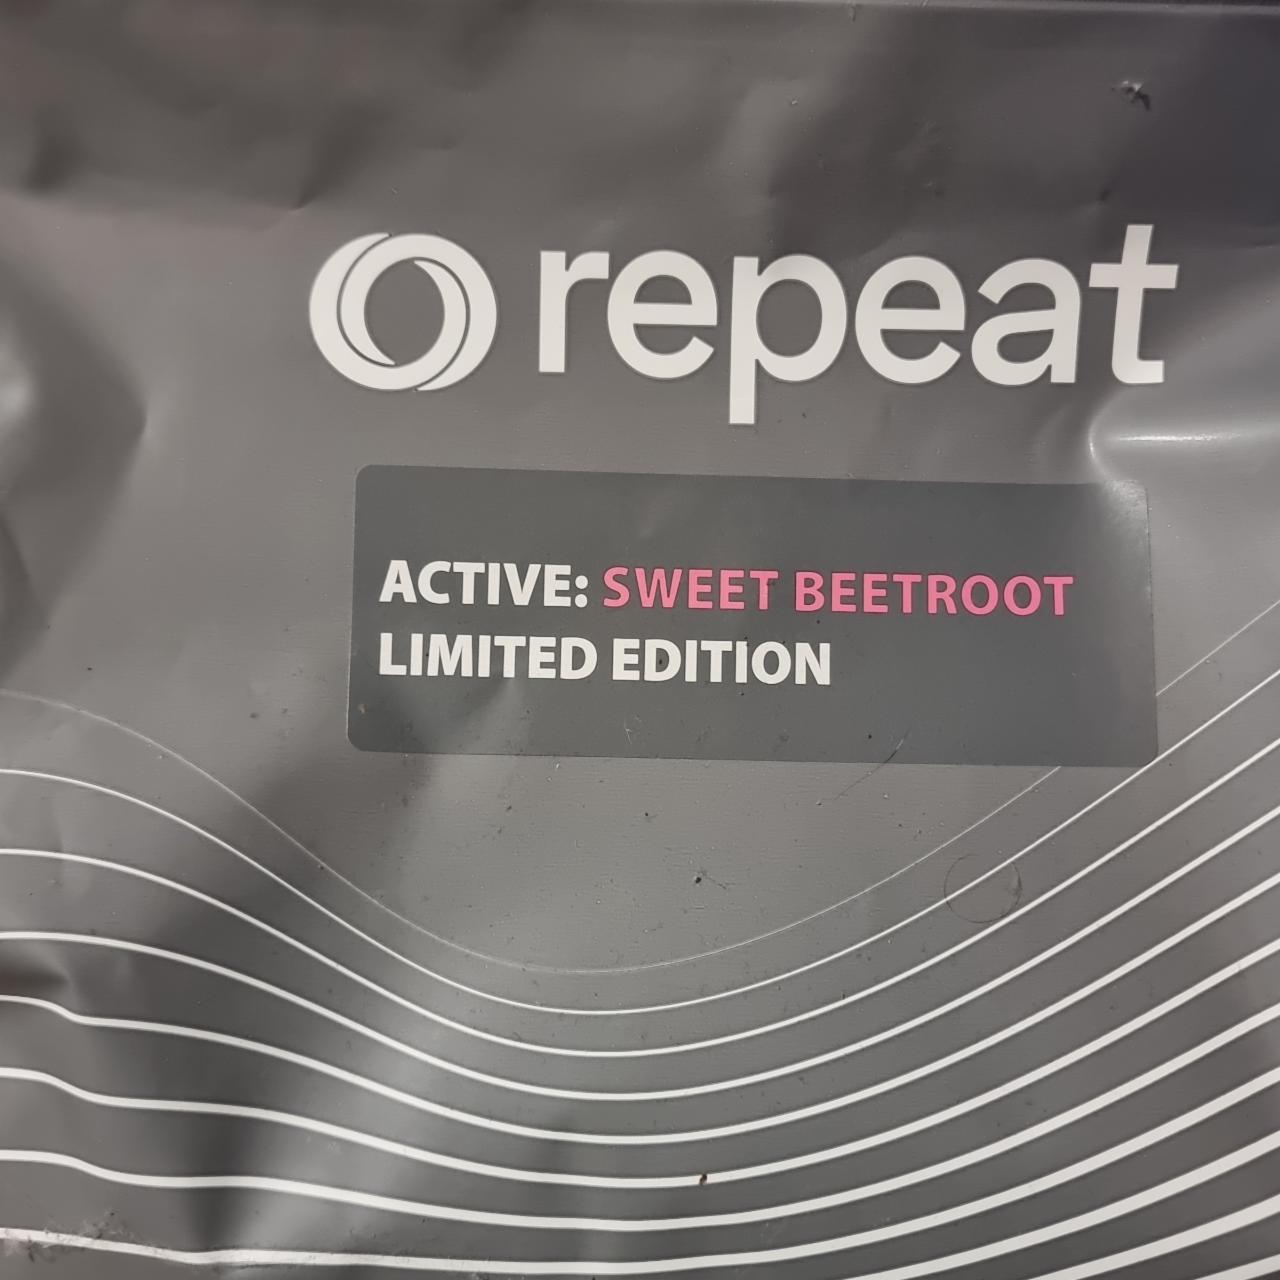 Zdjęcia - Repeat active sweet beetroot